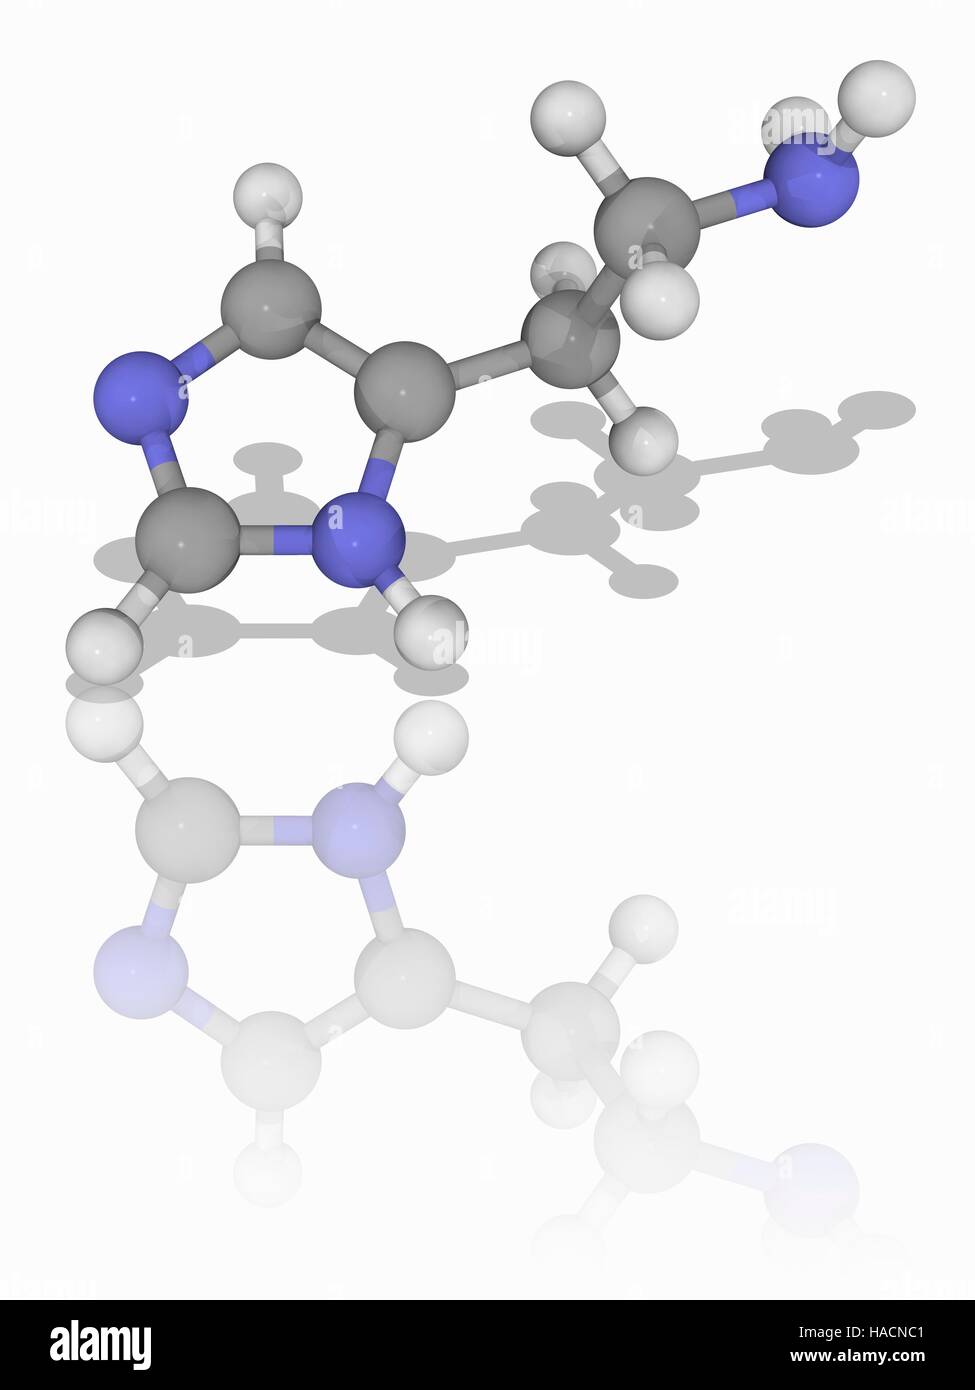 Histamin. Molekülmodell des immunstimulierende und Neurotransmitters Histamin (C5. H9. N3). Dies ist eine organische Stickstoffverbindung an der Immunantwort beteiligt. Atome als Kugeln dargestellt werden und sind farblich gekennzeichnet: Kohlenstoff (grau), Wasserstoff (weiß) und Stickstoff (blau). Abbildung. Stockfoto